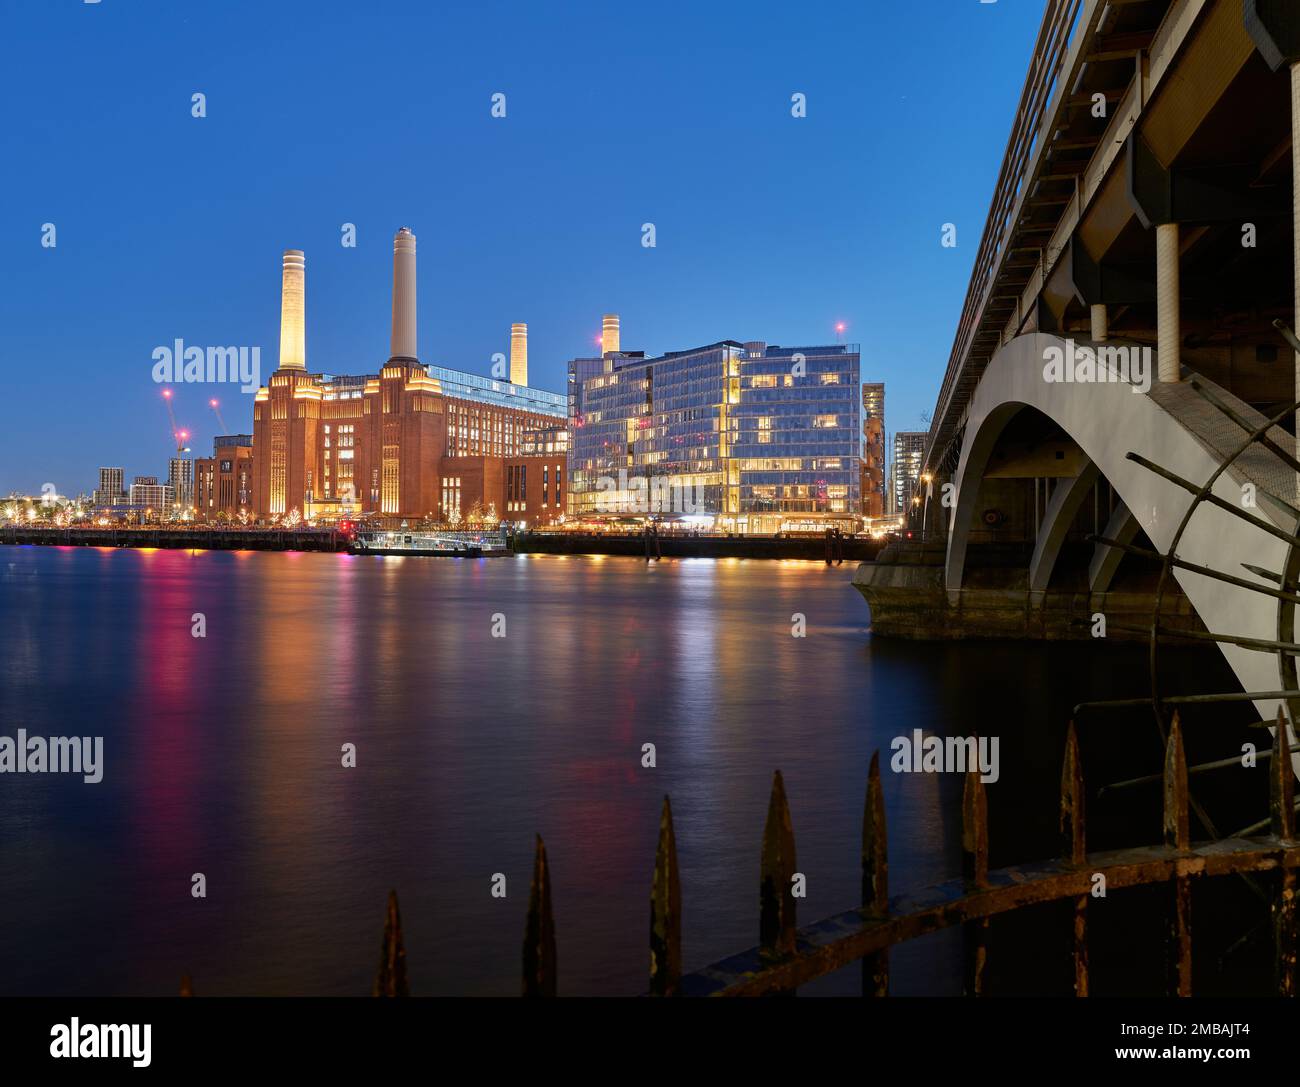 Illuminata di notte, la centrale elettrica di Battersea, attualmente un complesso commerciale, in disuso, sulle rive del Tamigi, Nine Elms, Londra. Foto Stock